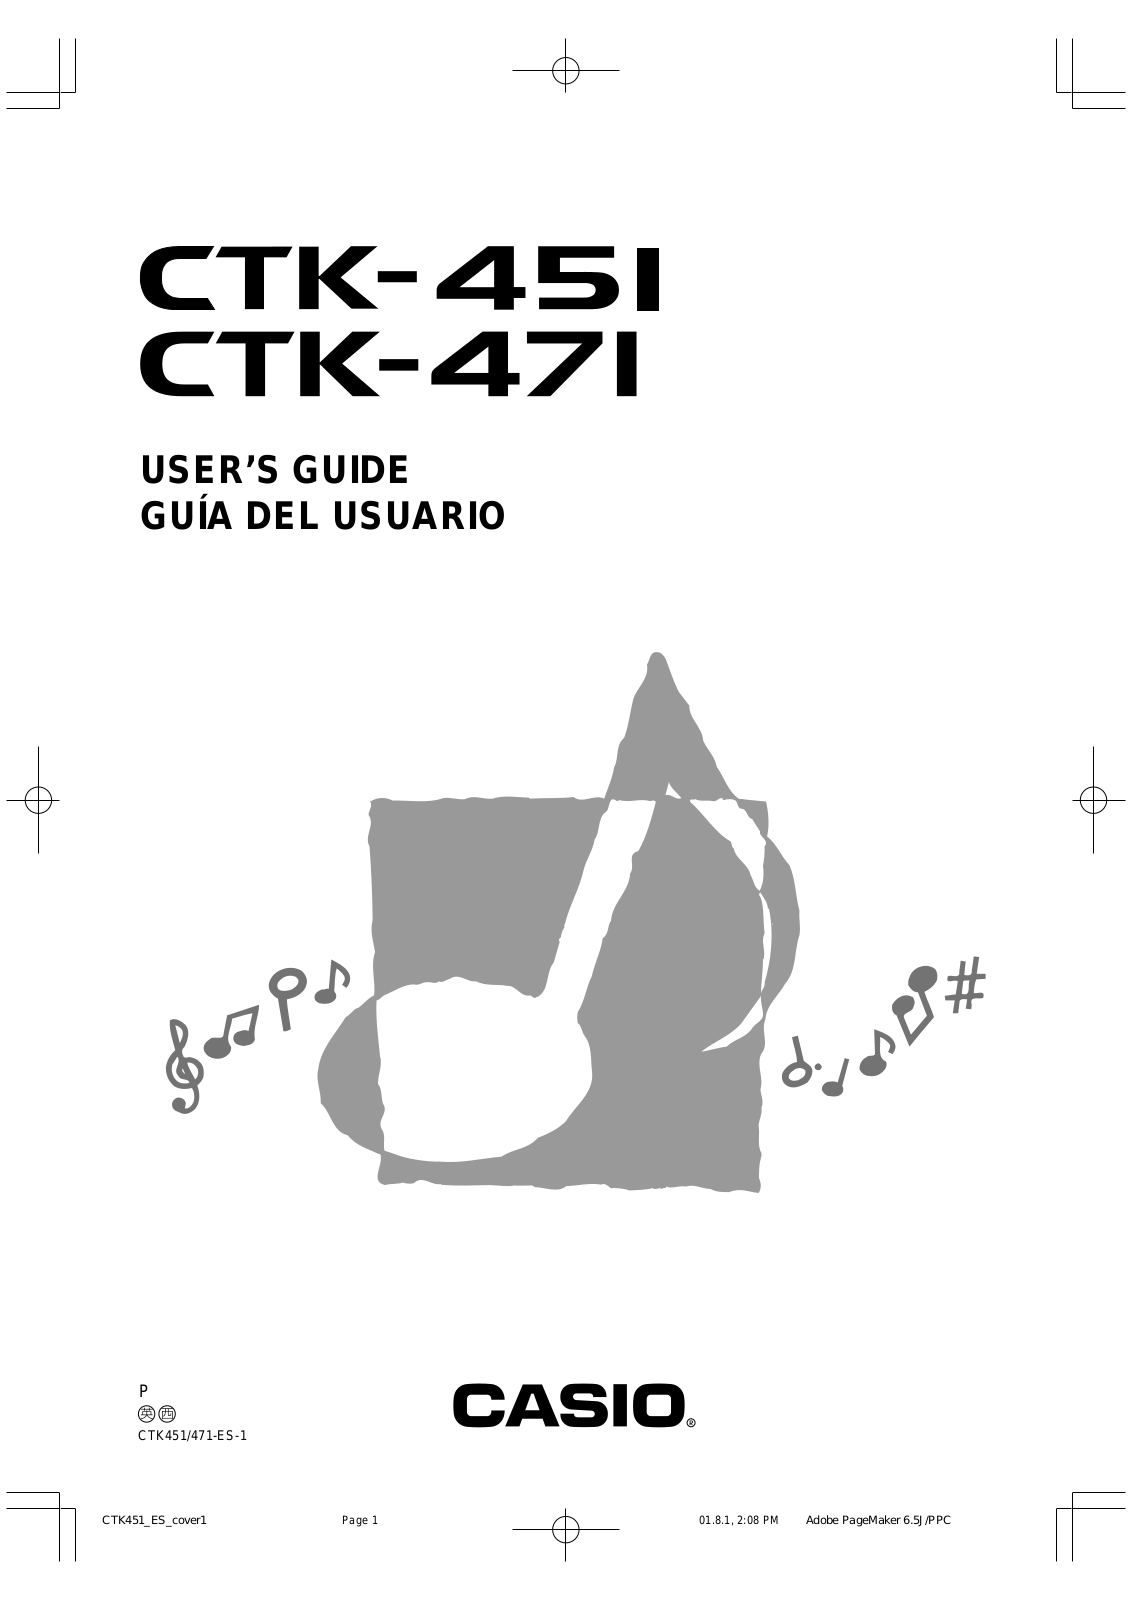 Casio CTK-471, CTK-451 User Manual